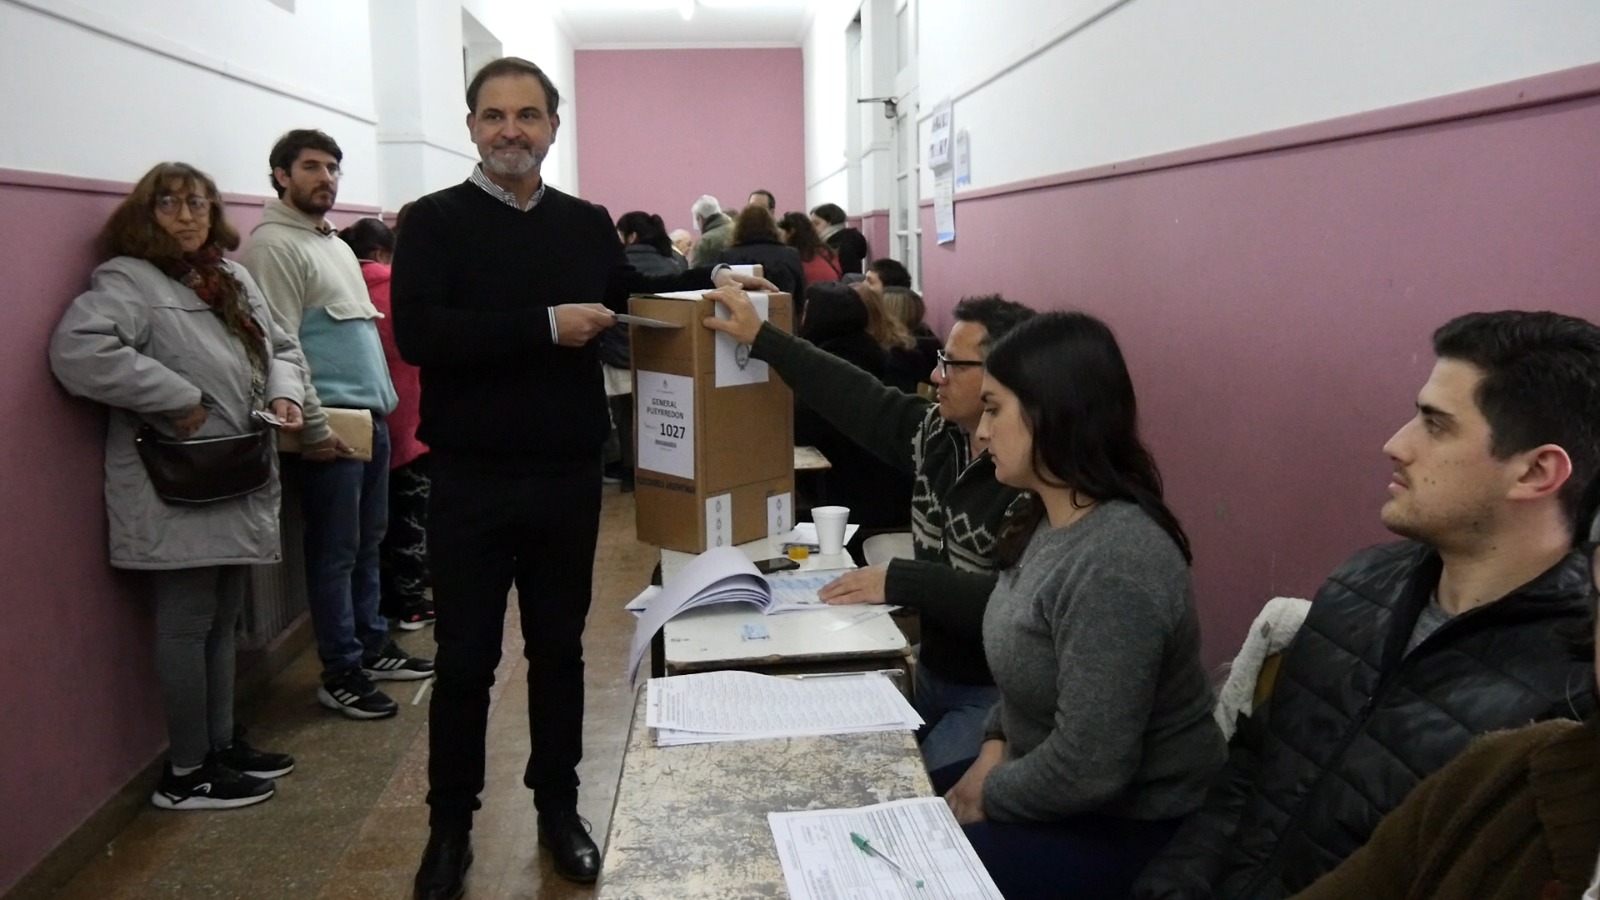 Rolando Demaio, precandidato de Milei en Mar del Plata, emitió su voto con optimismo y llamado a la participación ciudadana